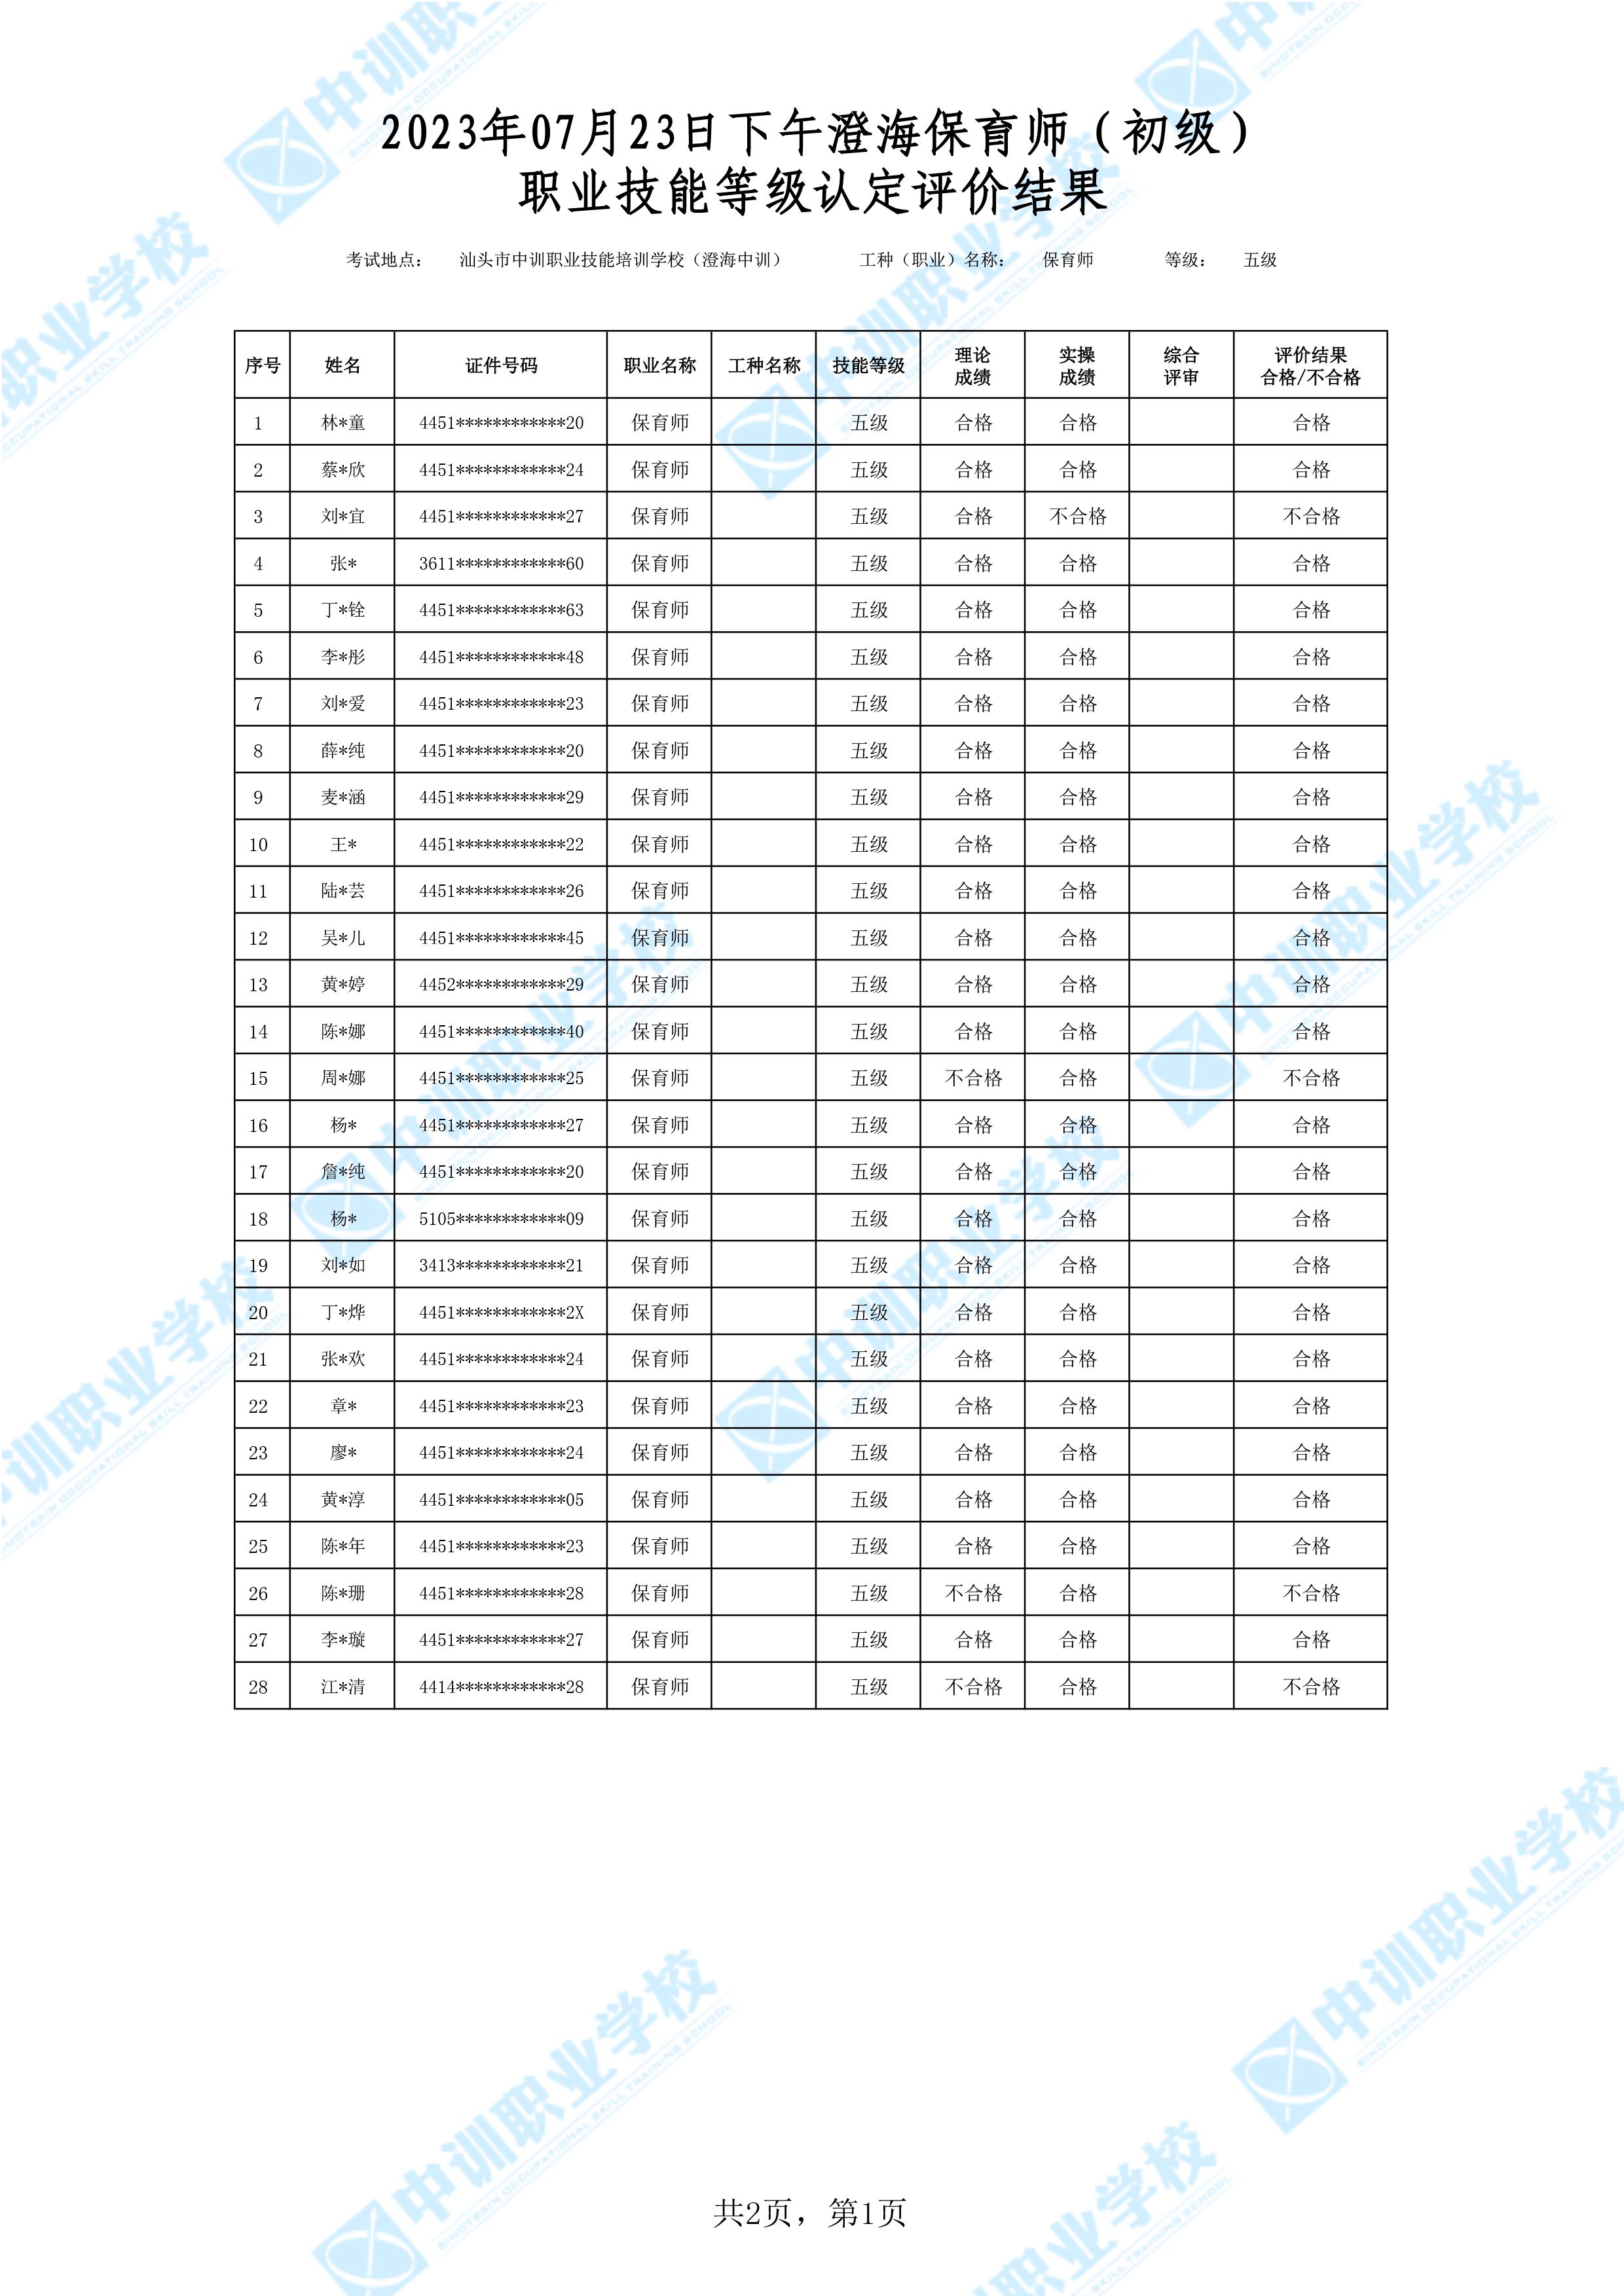 2023-07-23日下午澄海初级保育师考试鉴定名册表-1 副本.jpg